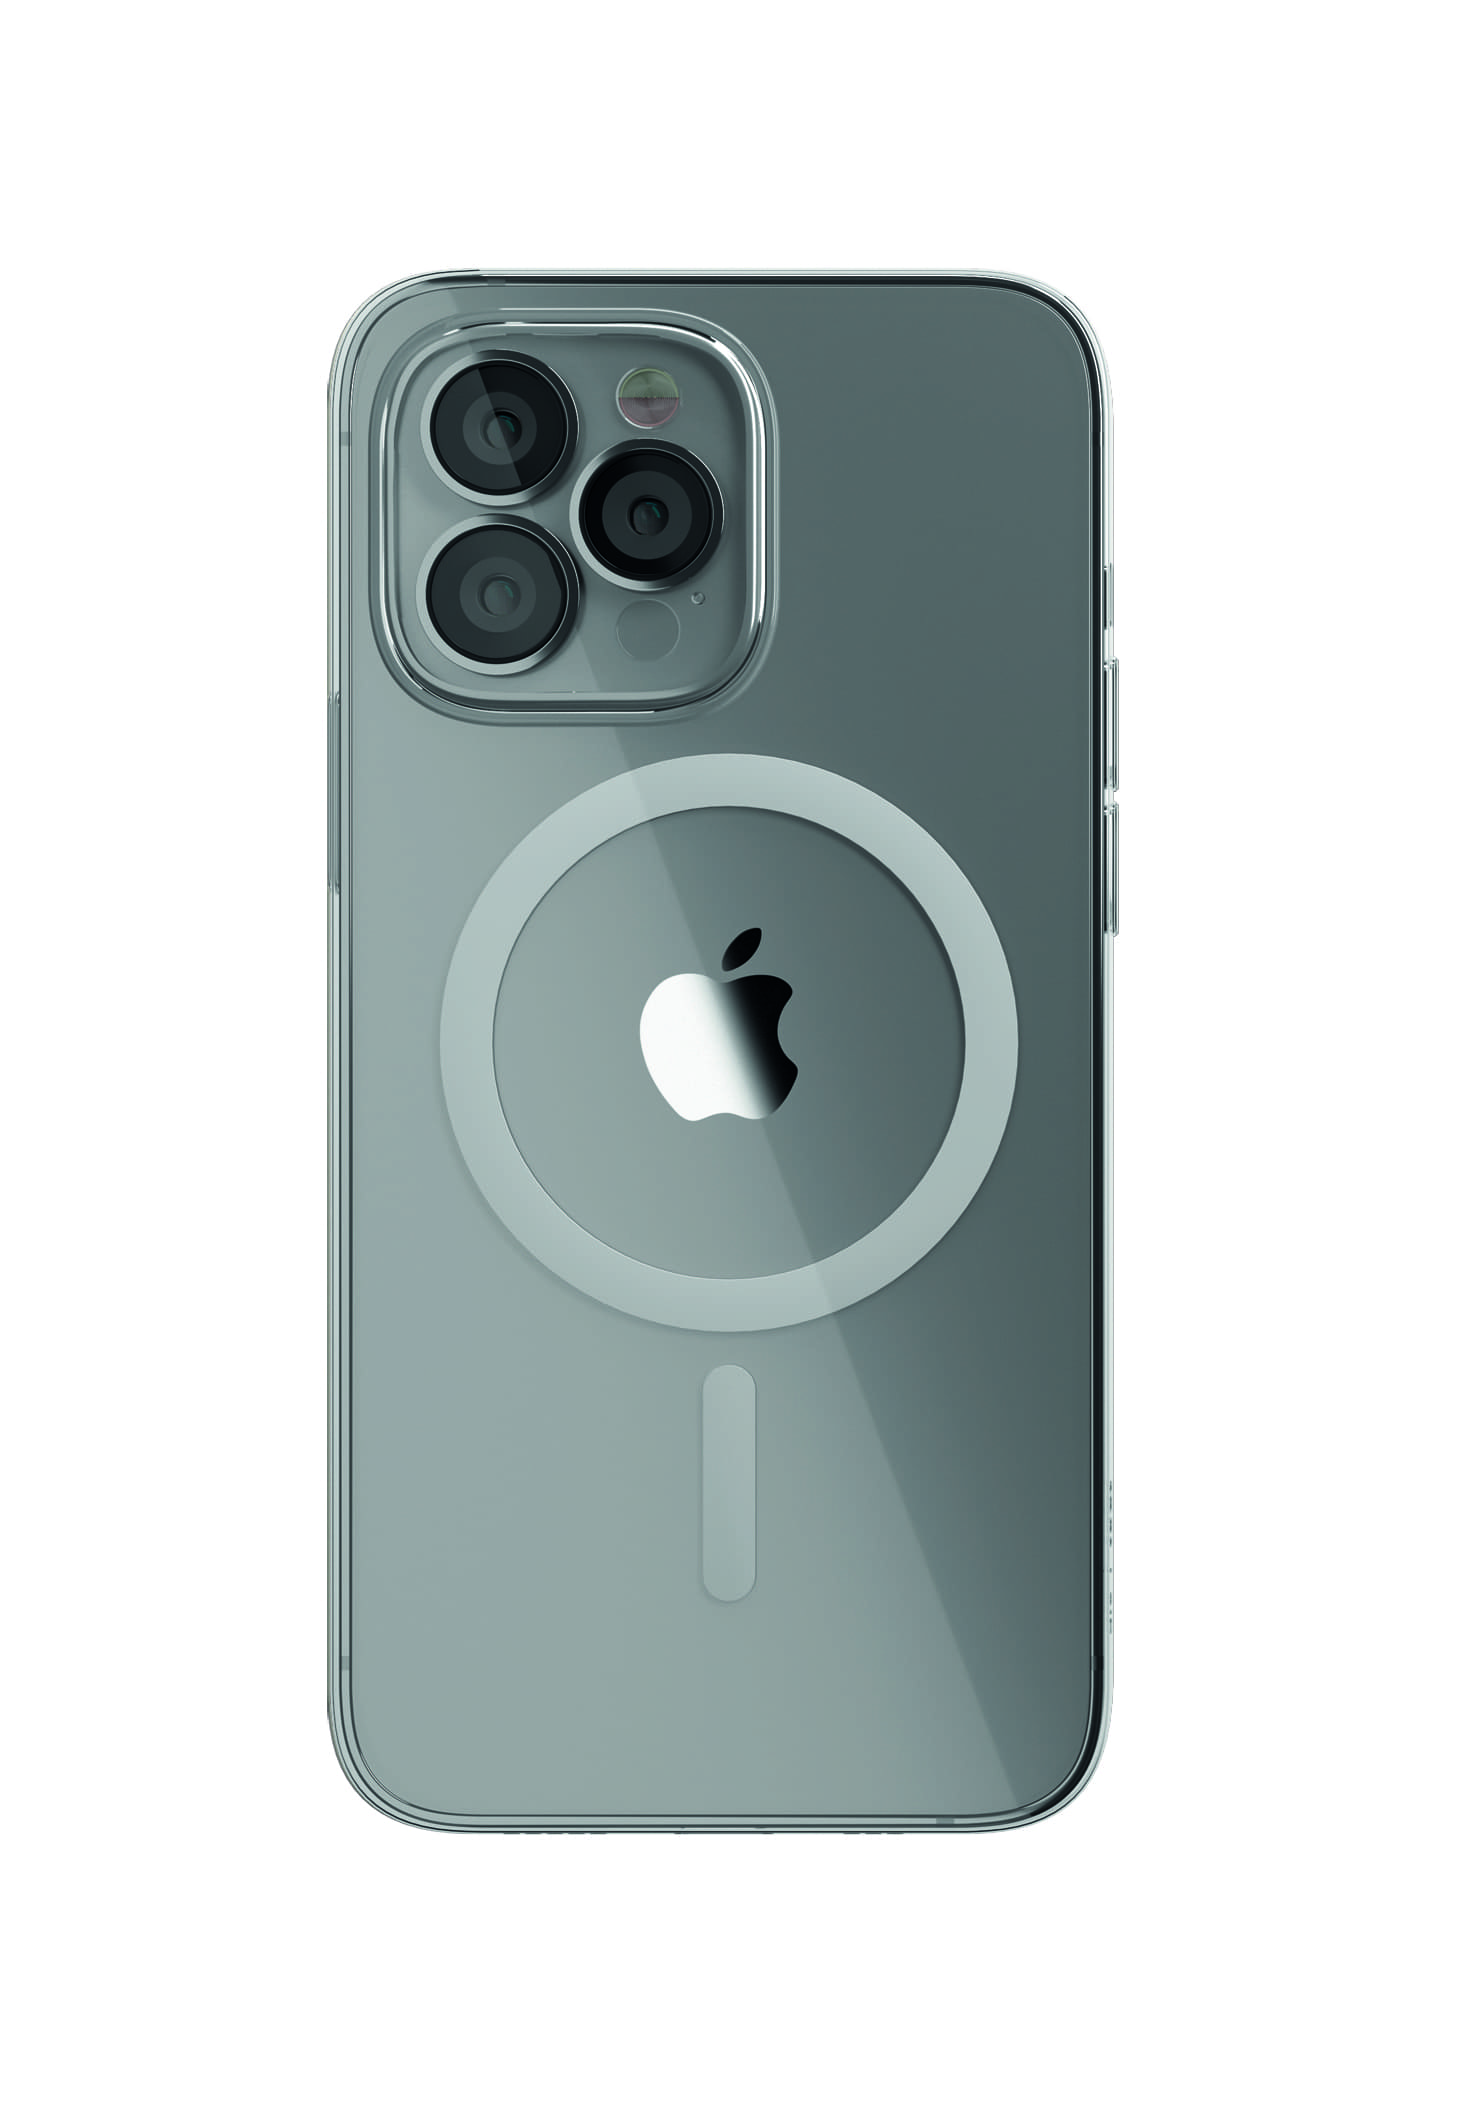 Чехол защитный &quot;vlp&quot; Crystal case with MagSafe для iPhone 13 Pro, прозрачный